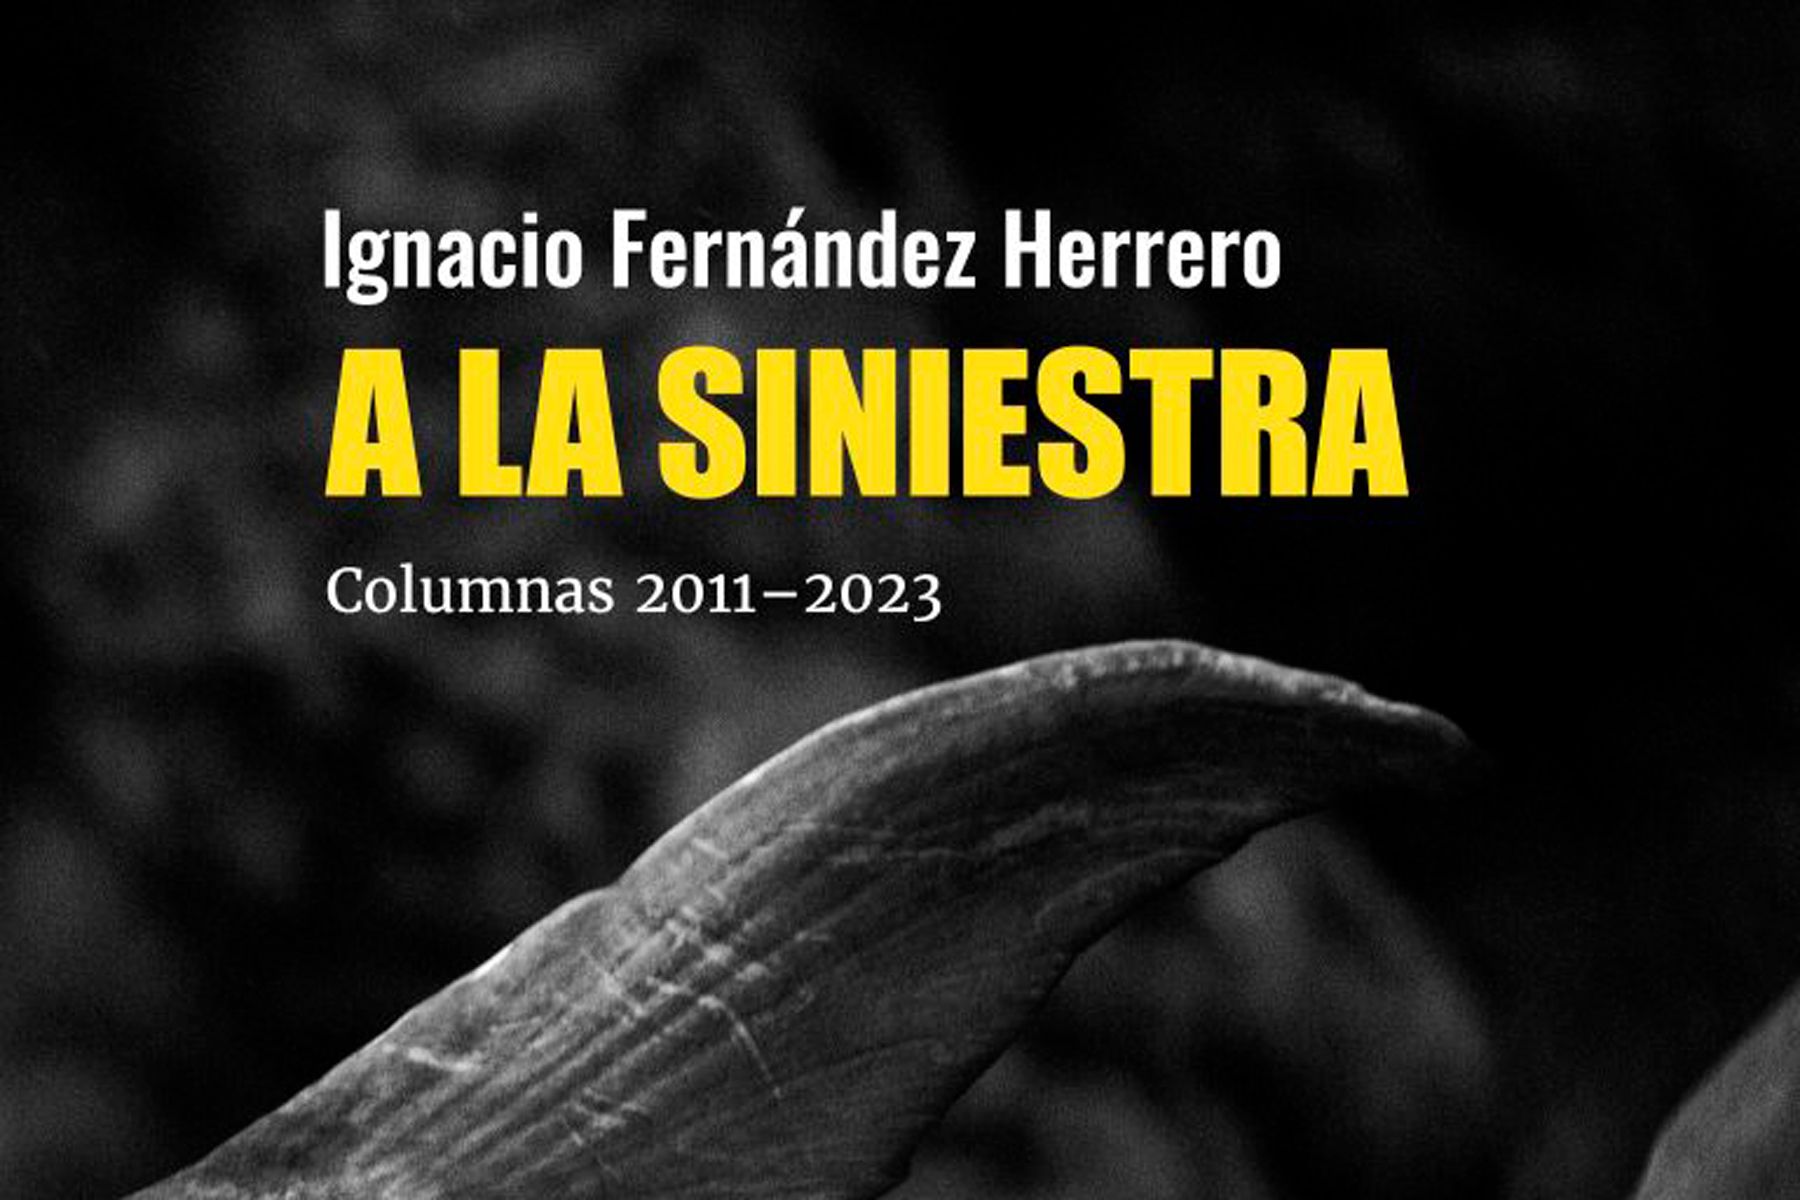 Portada del libro 'A la siniestra' de Ignacio Fernández Herrero